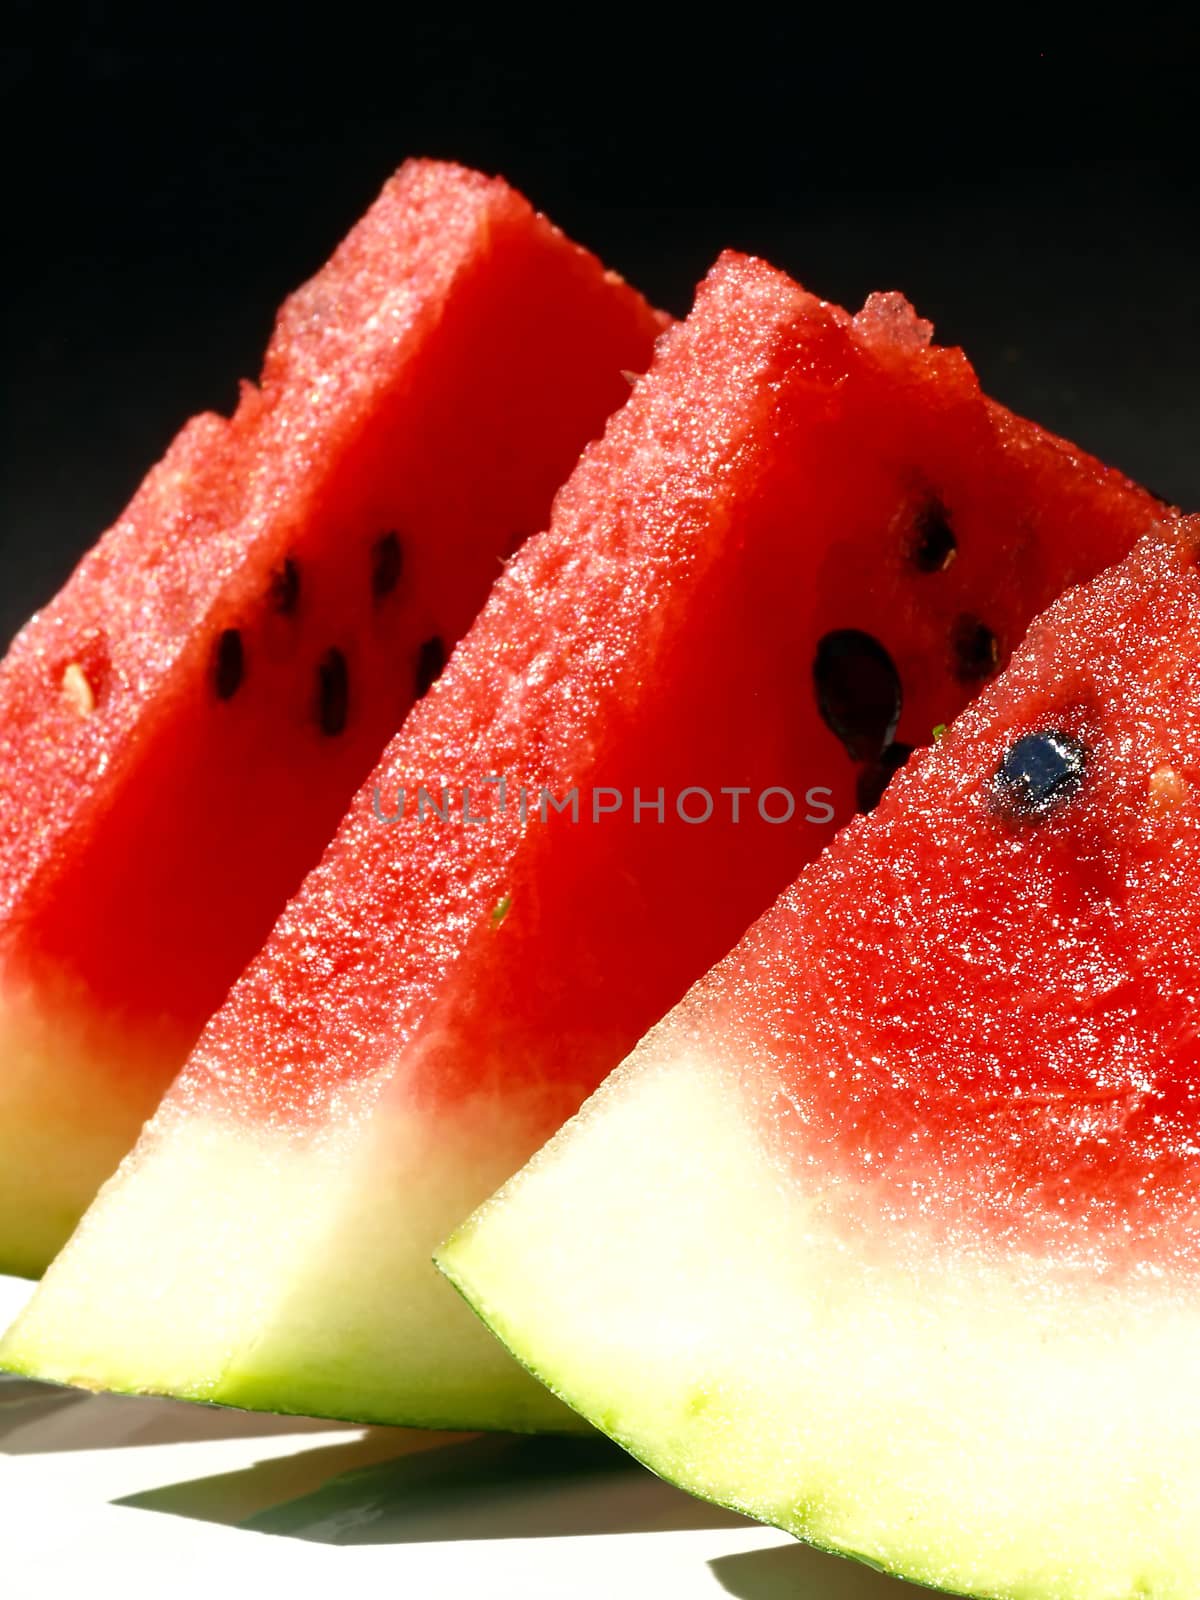 melon in cuts